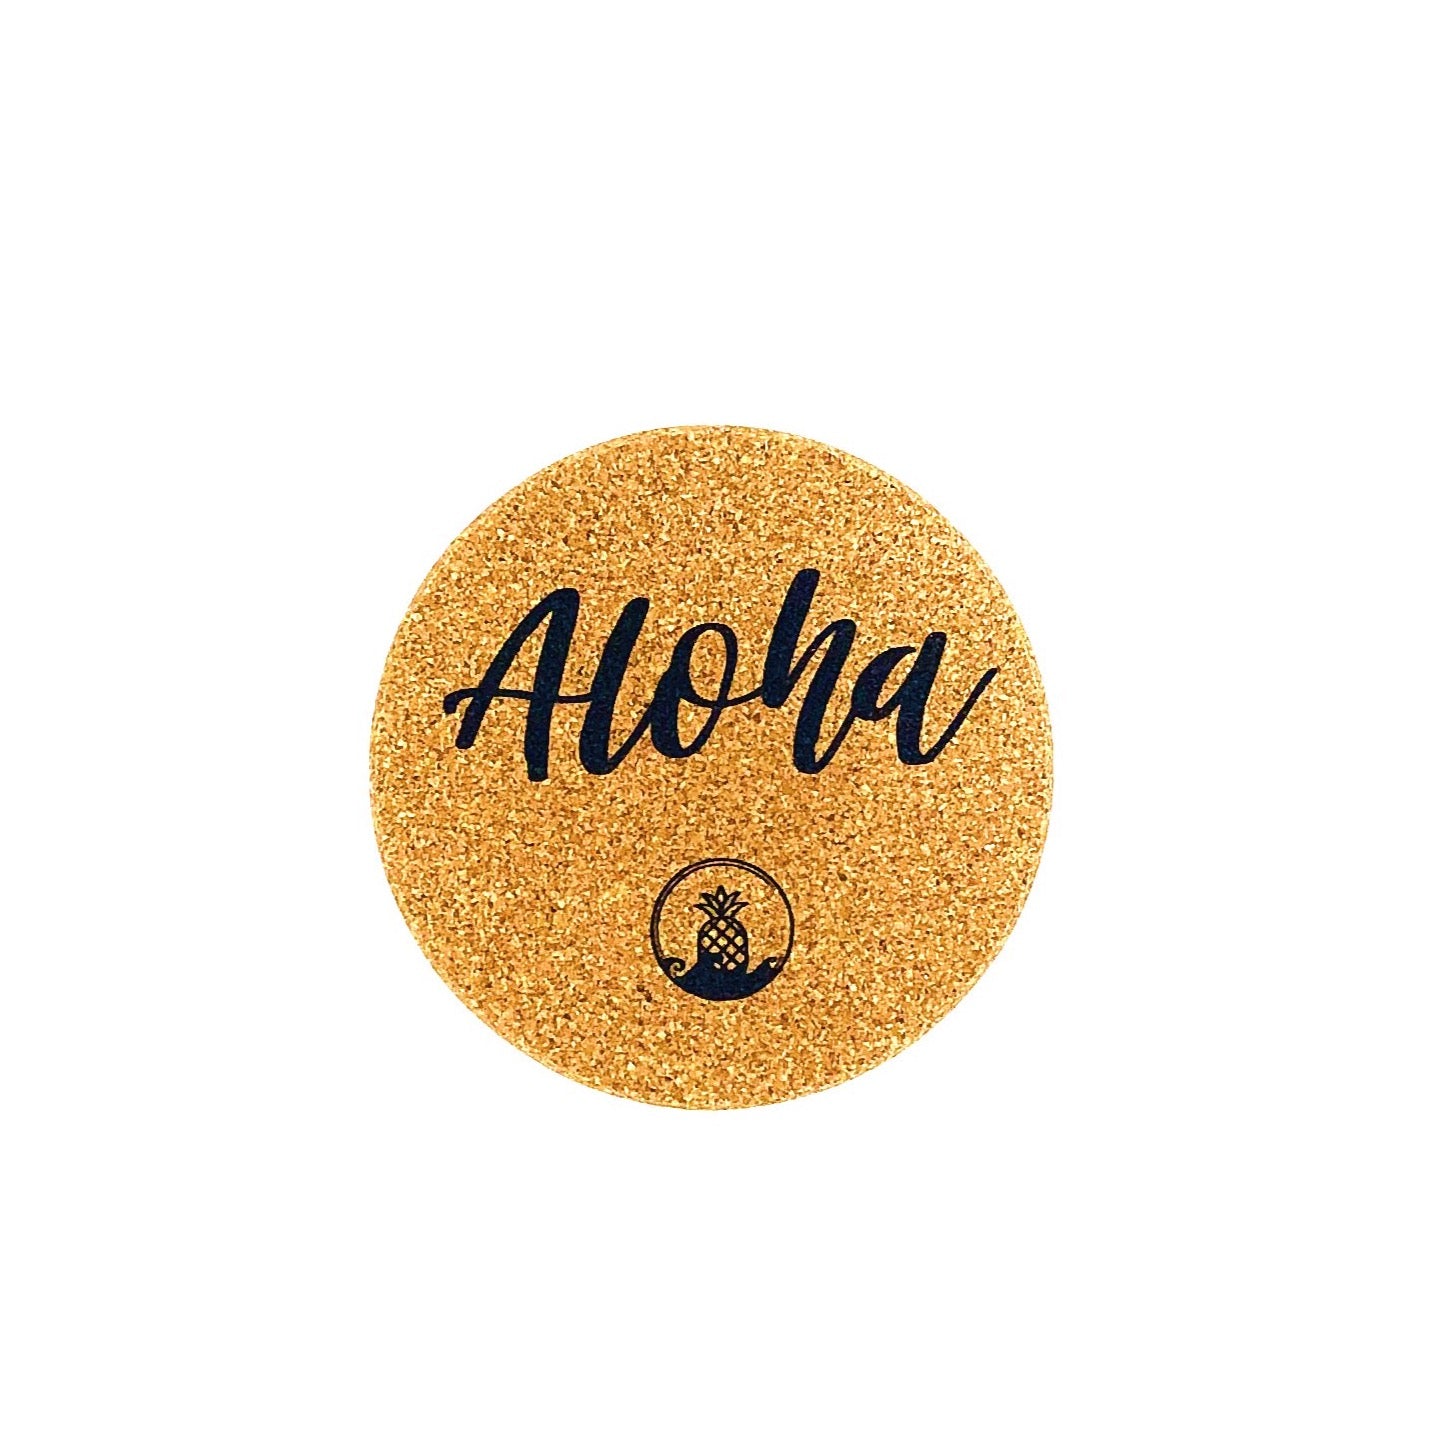 Aloha Box Hawaii logo coaster